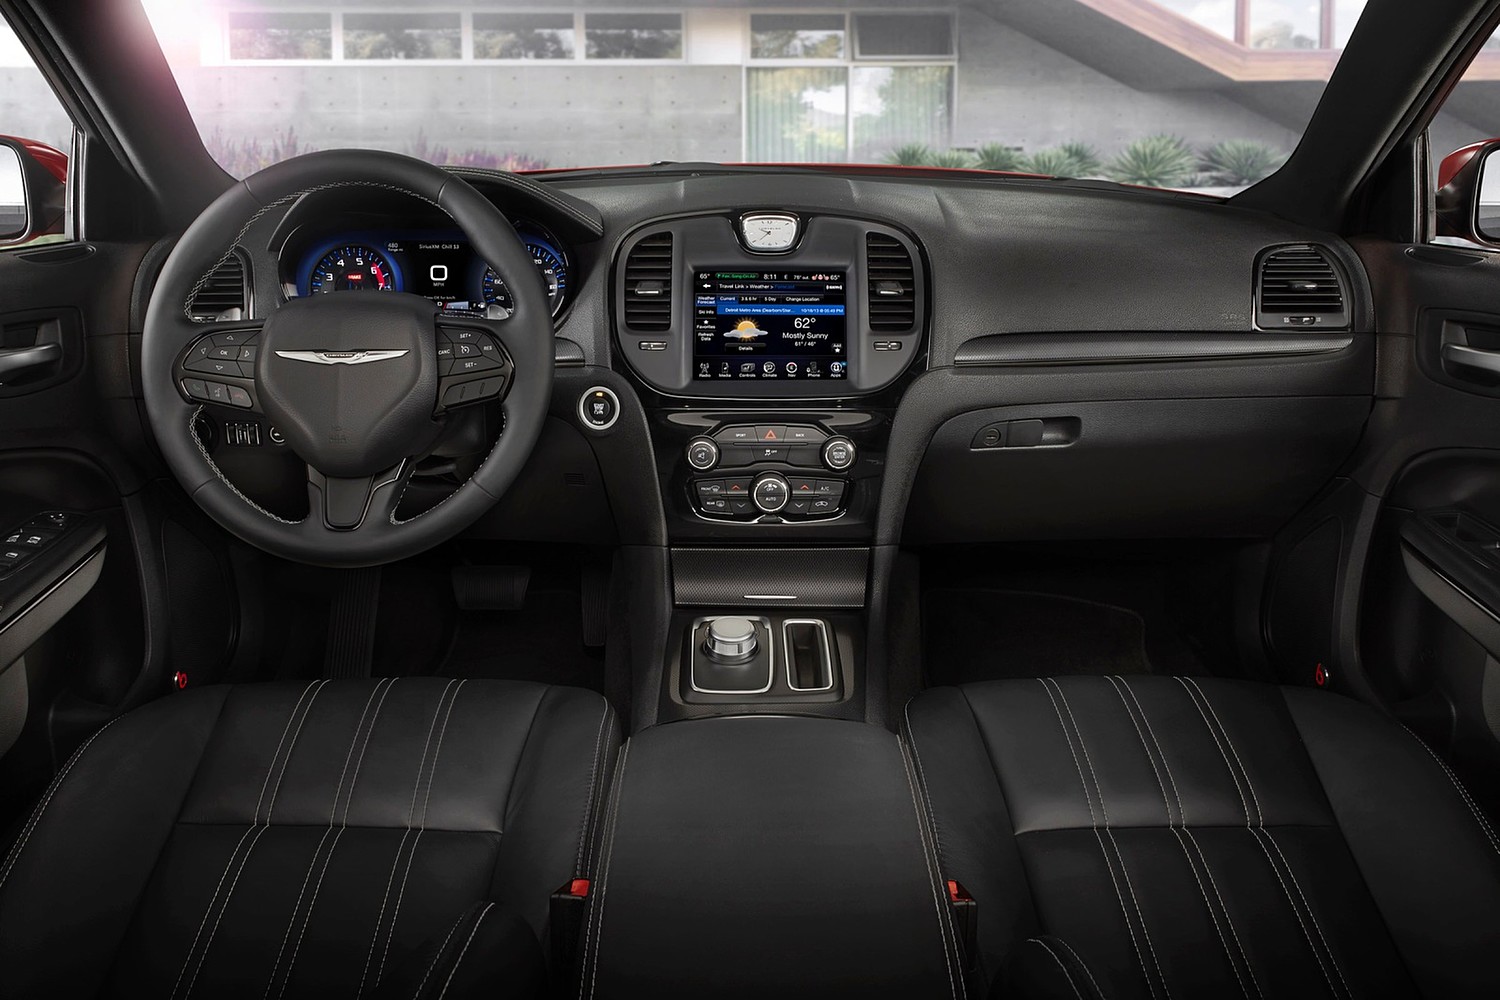 2015 Chrysler 300 S Sedan Dashboard